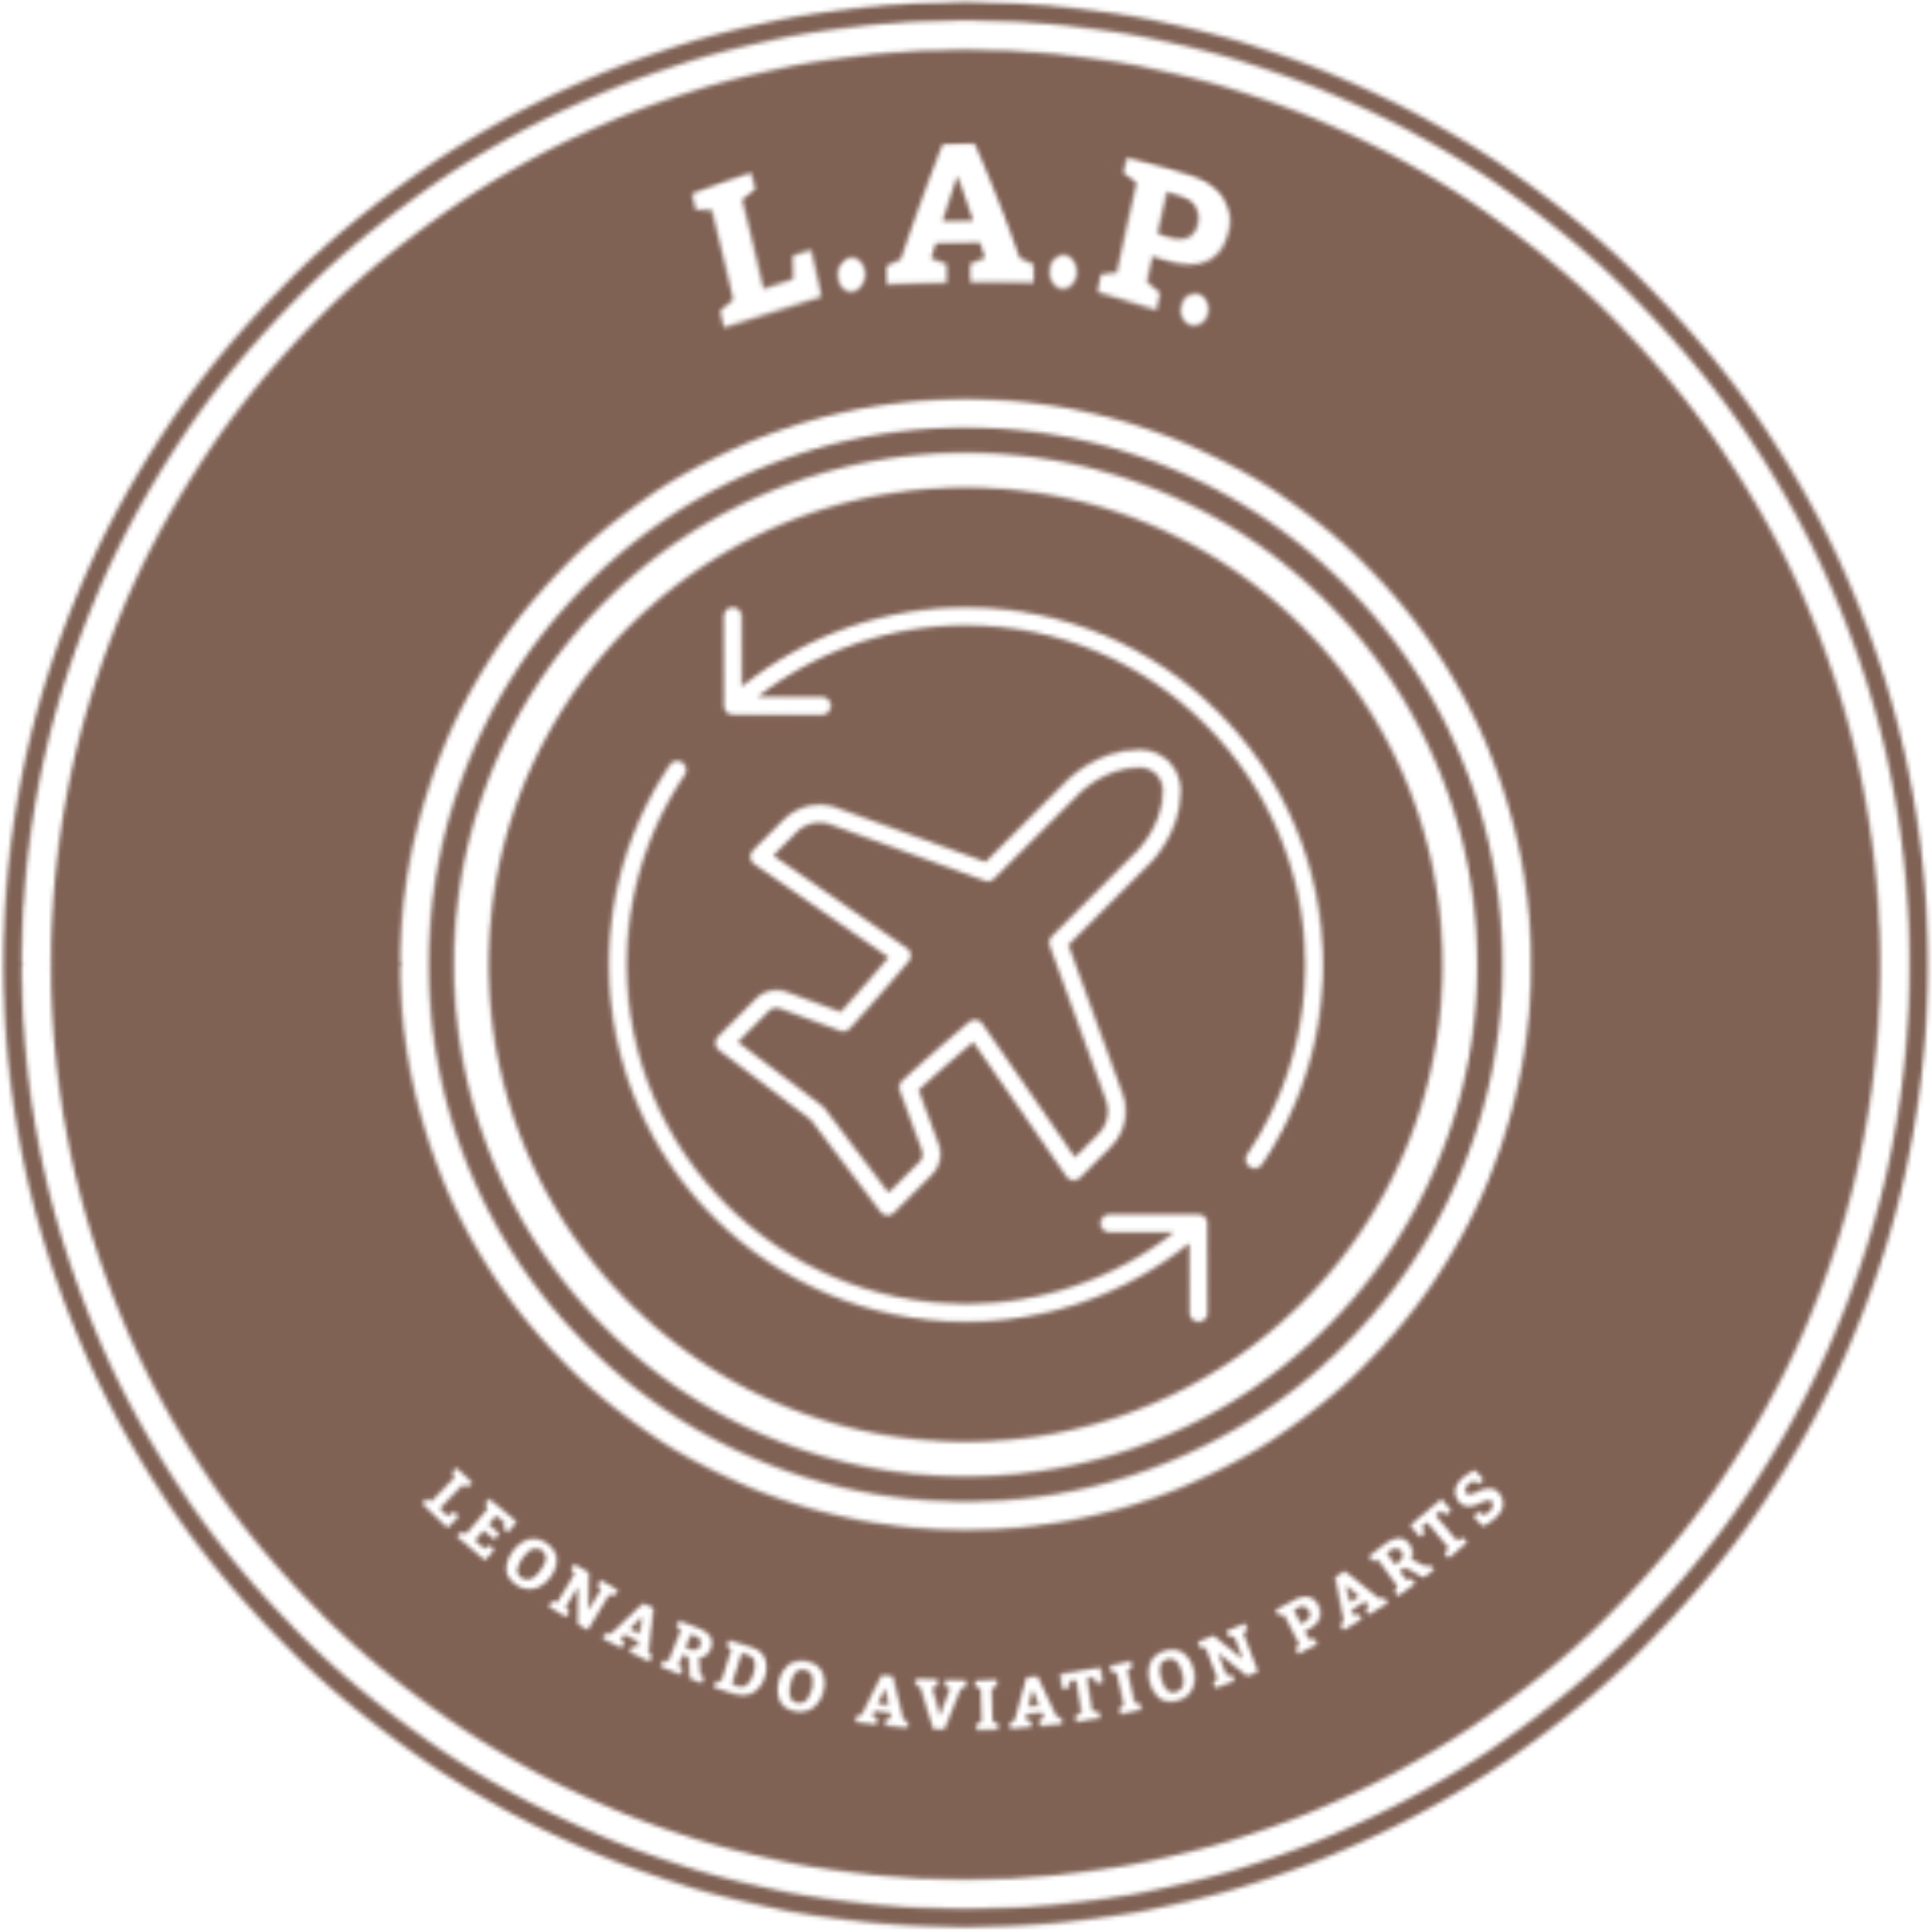 Leonardo Aviation Parts